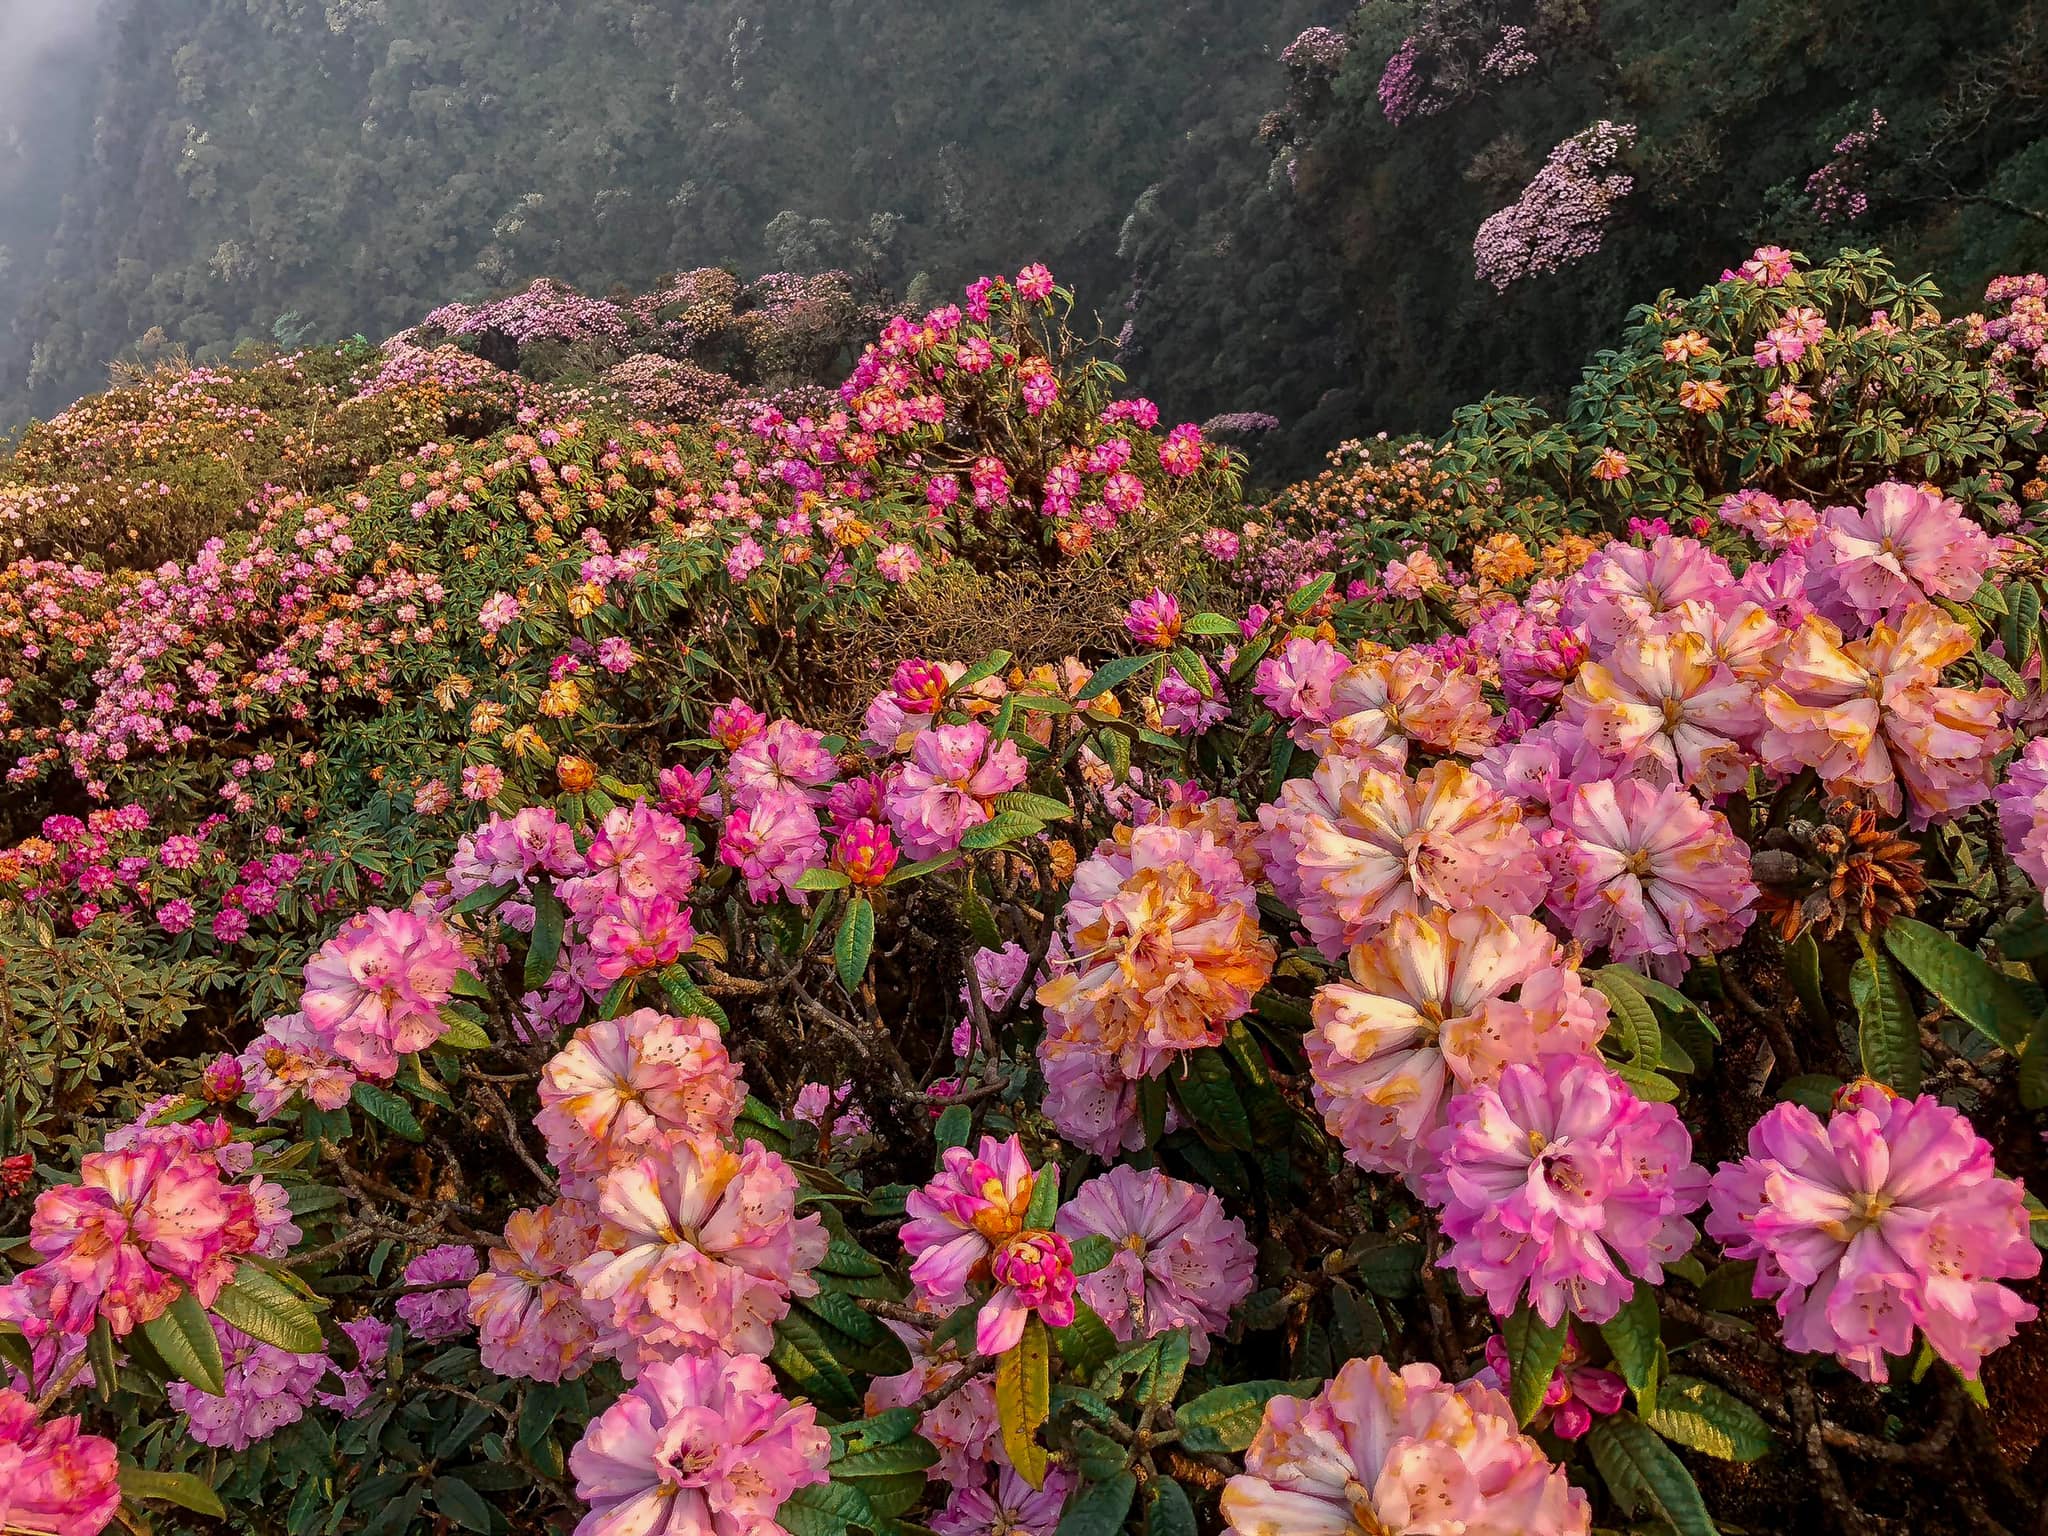 Ở Sapa, Mù Cang Chải... cũng có hoa đỗ quyên nhưng số lượng cây nhiều nhất vẫn là Putaleng. Hàng vạn cây vào mùa hoa nở sẽ khoe sắc rực rỡ và bao phủ bạt ngàn các sườn núi nơi đây.